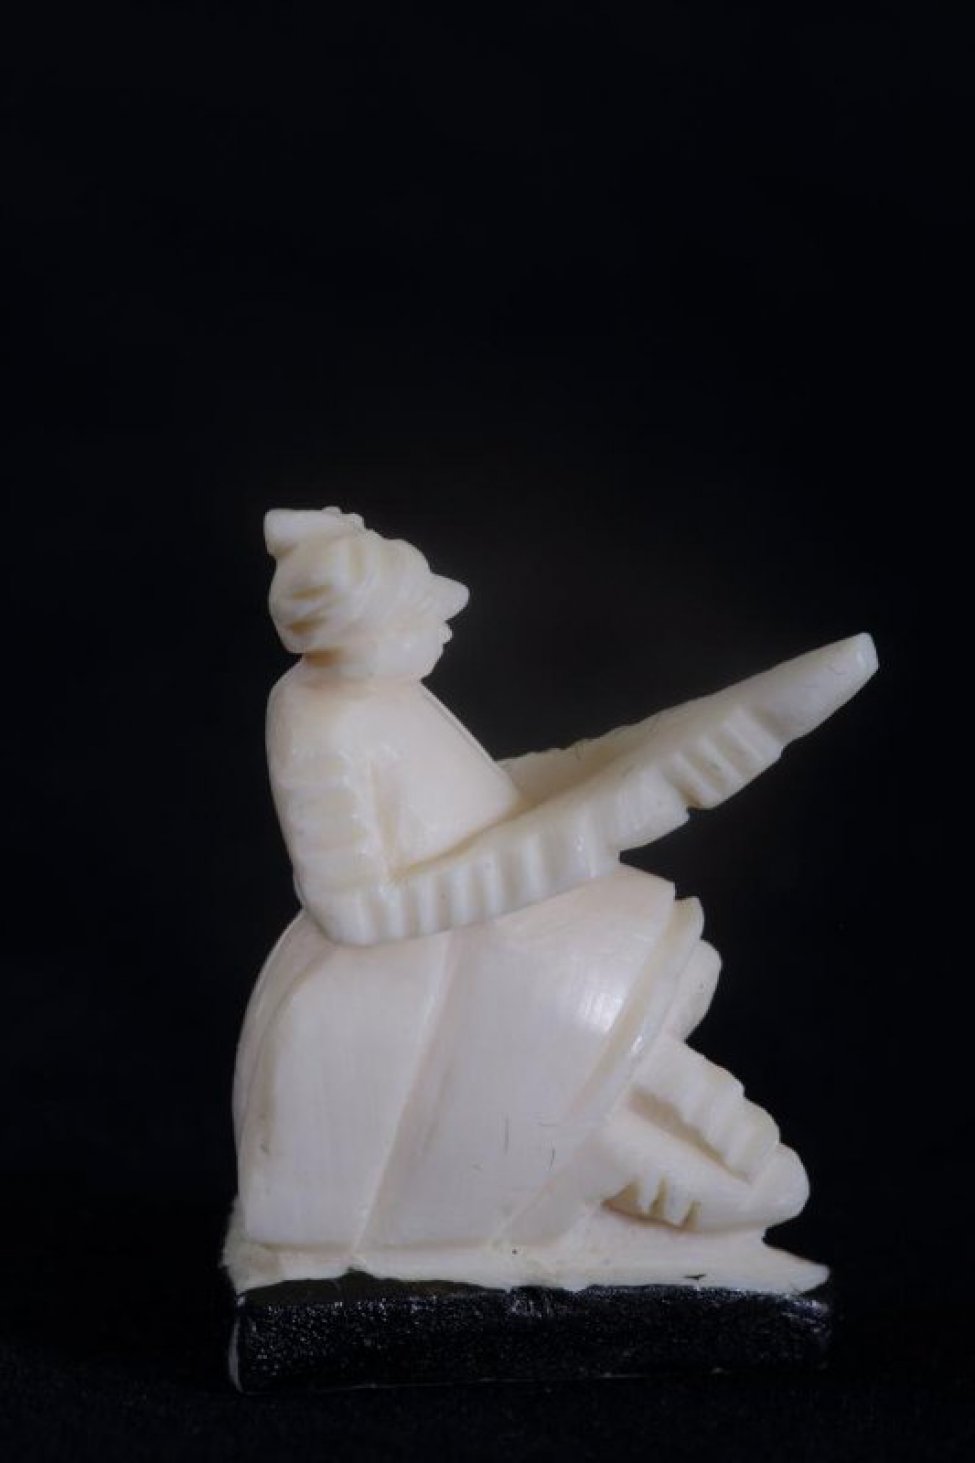 Стоящая на одном колене фигура воина с оружием в форме треугольника в руках. Подставка черная треугольная.